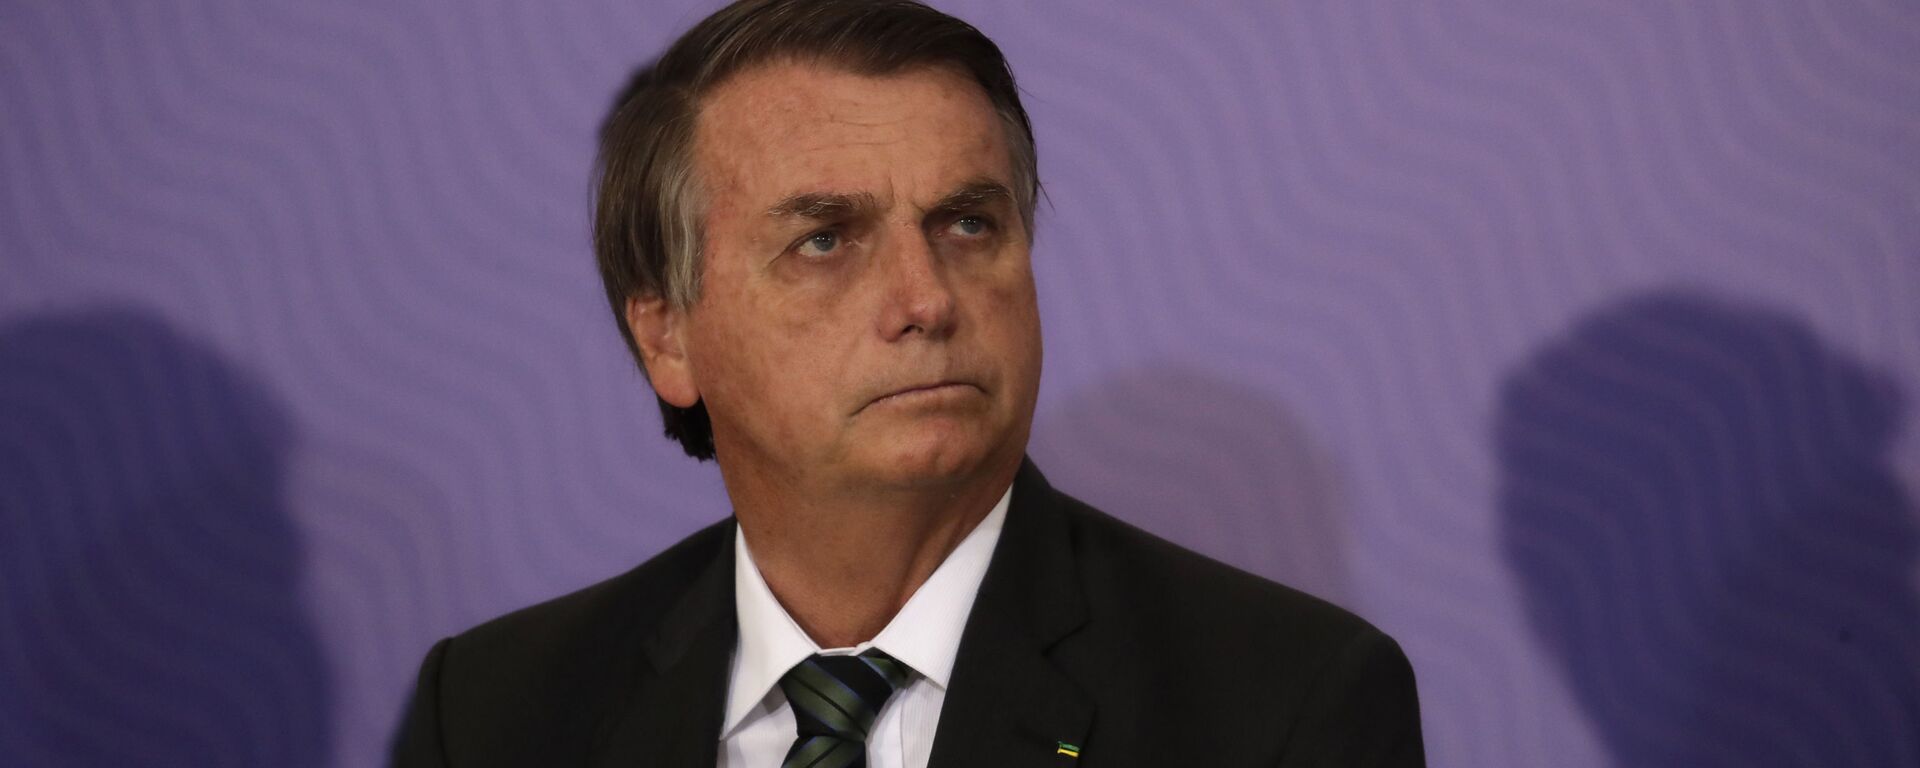 El presidente de Brasil, Jair Bolsonaro - Sputnik Mundo, 1920, 18.01.2021